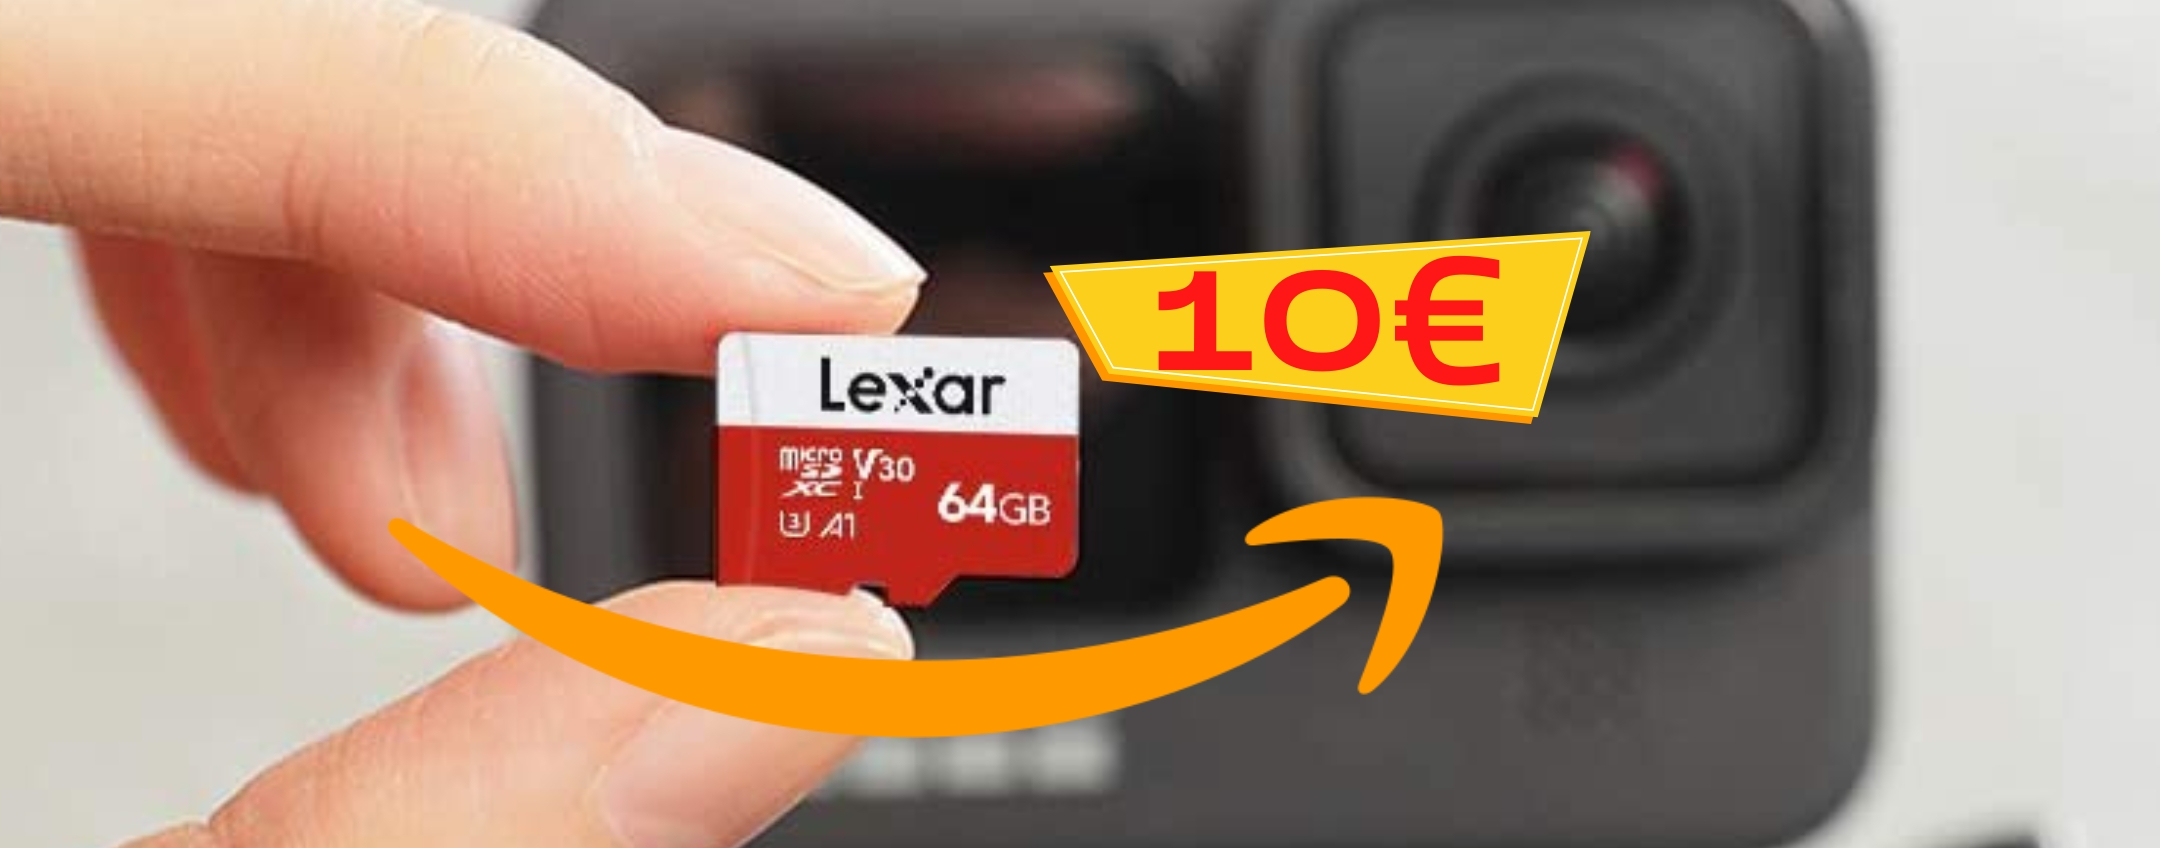 MicroSD da 64 GB a 10€: BOMBA Amazon da non farsi scappare